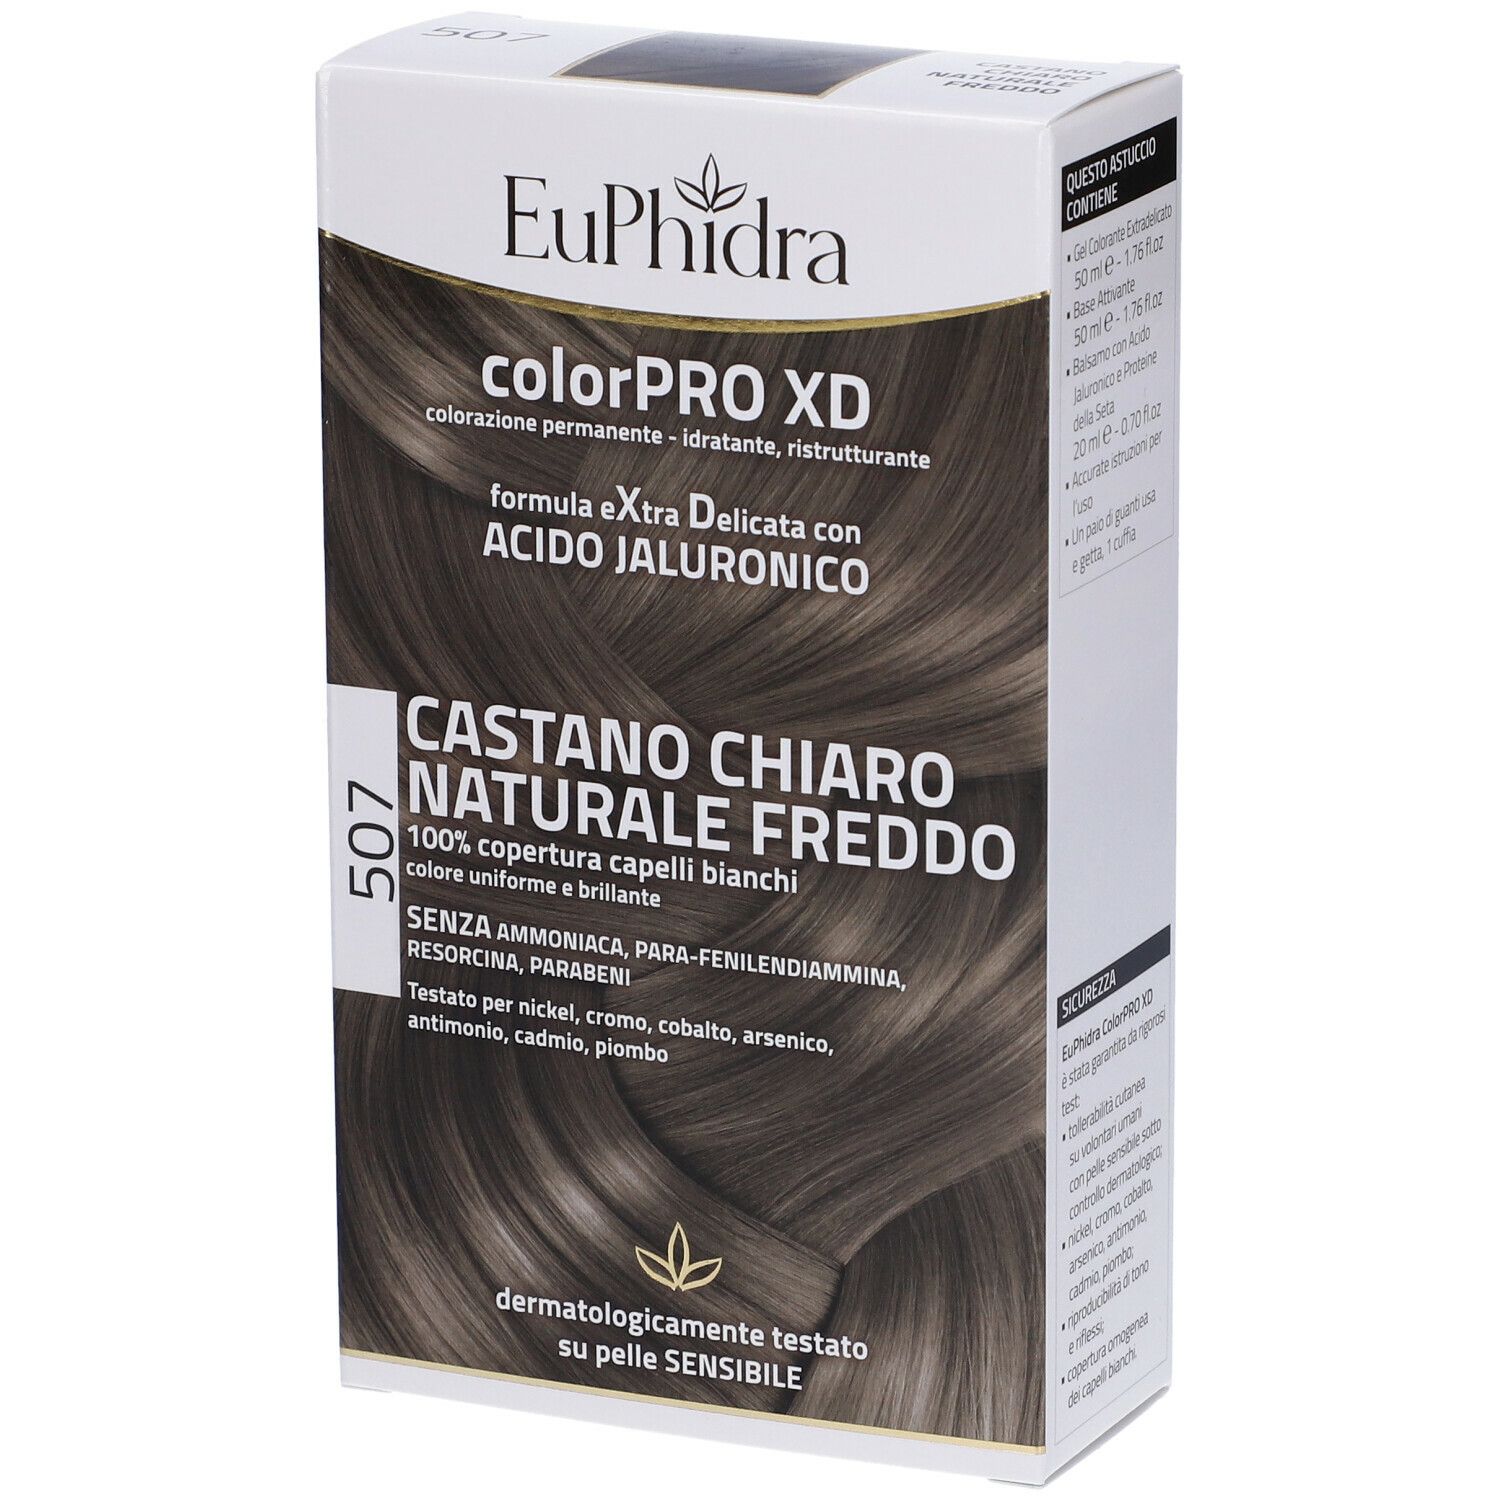 Euphidra ColorPRO XD Castano Chiaro Naturale Freddo 507